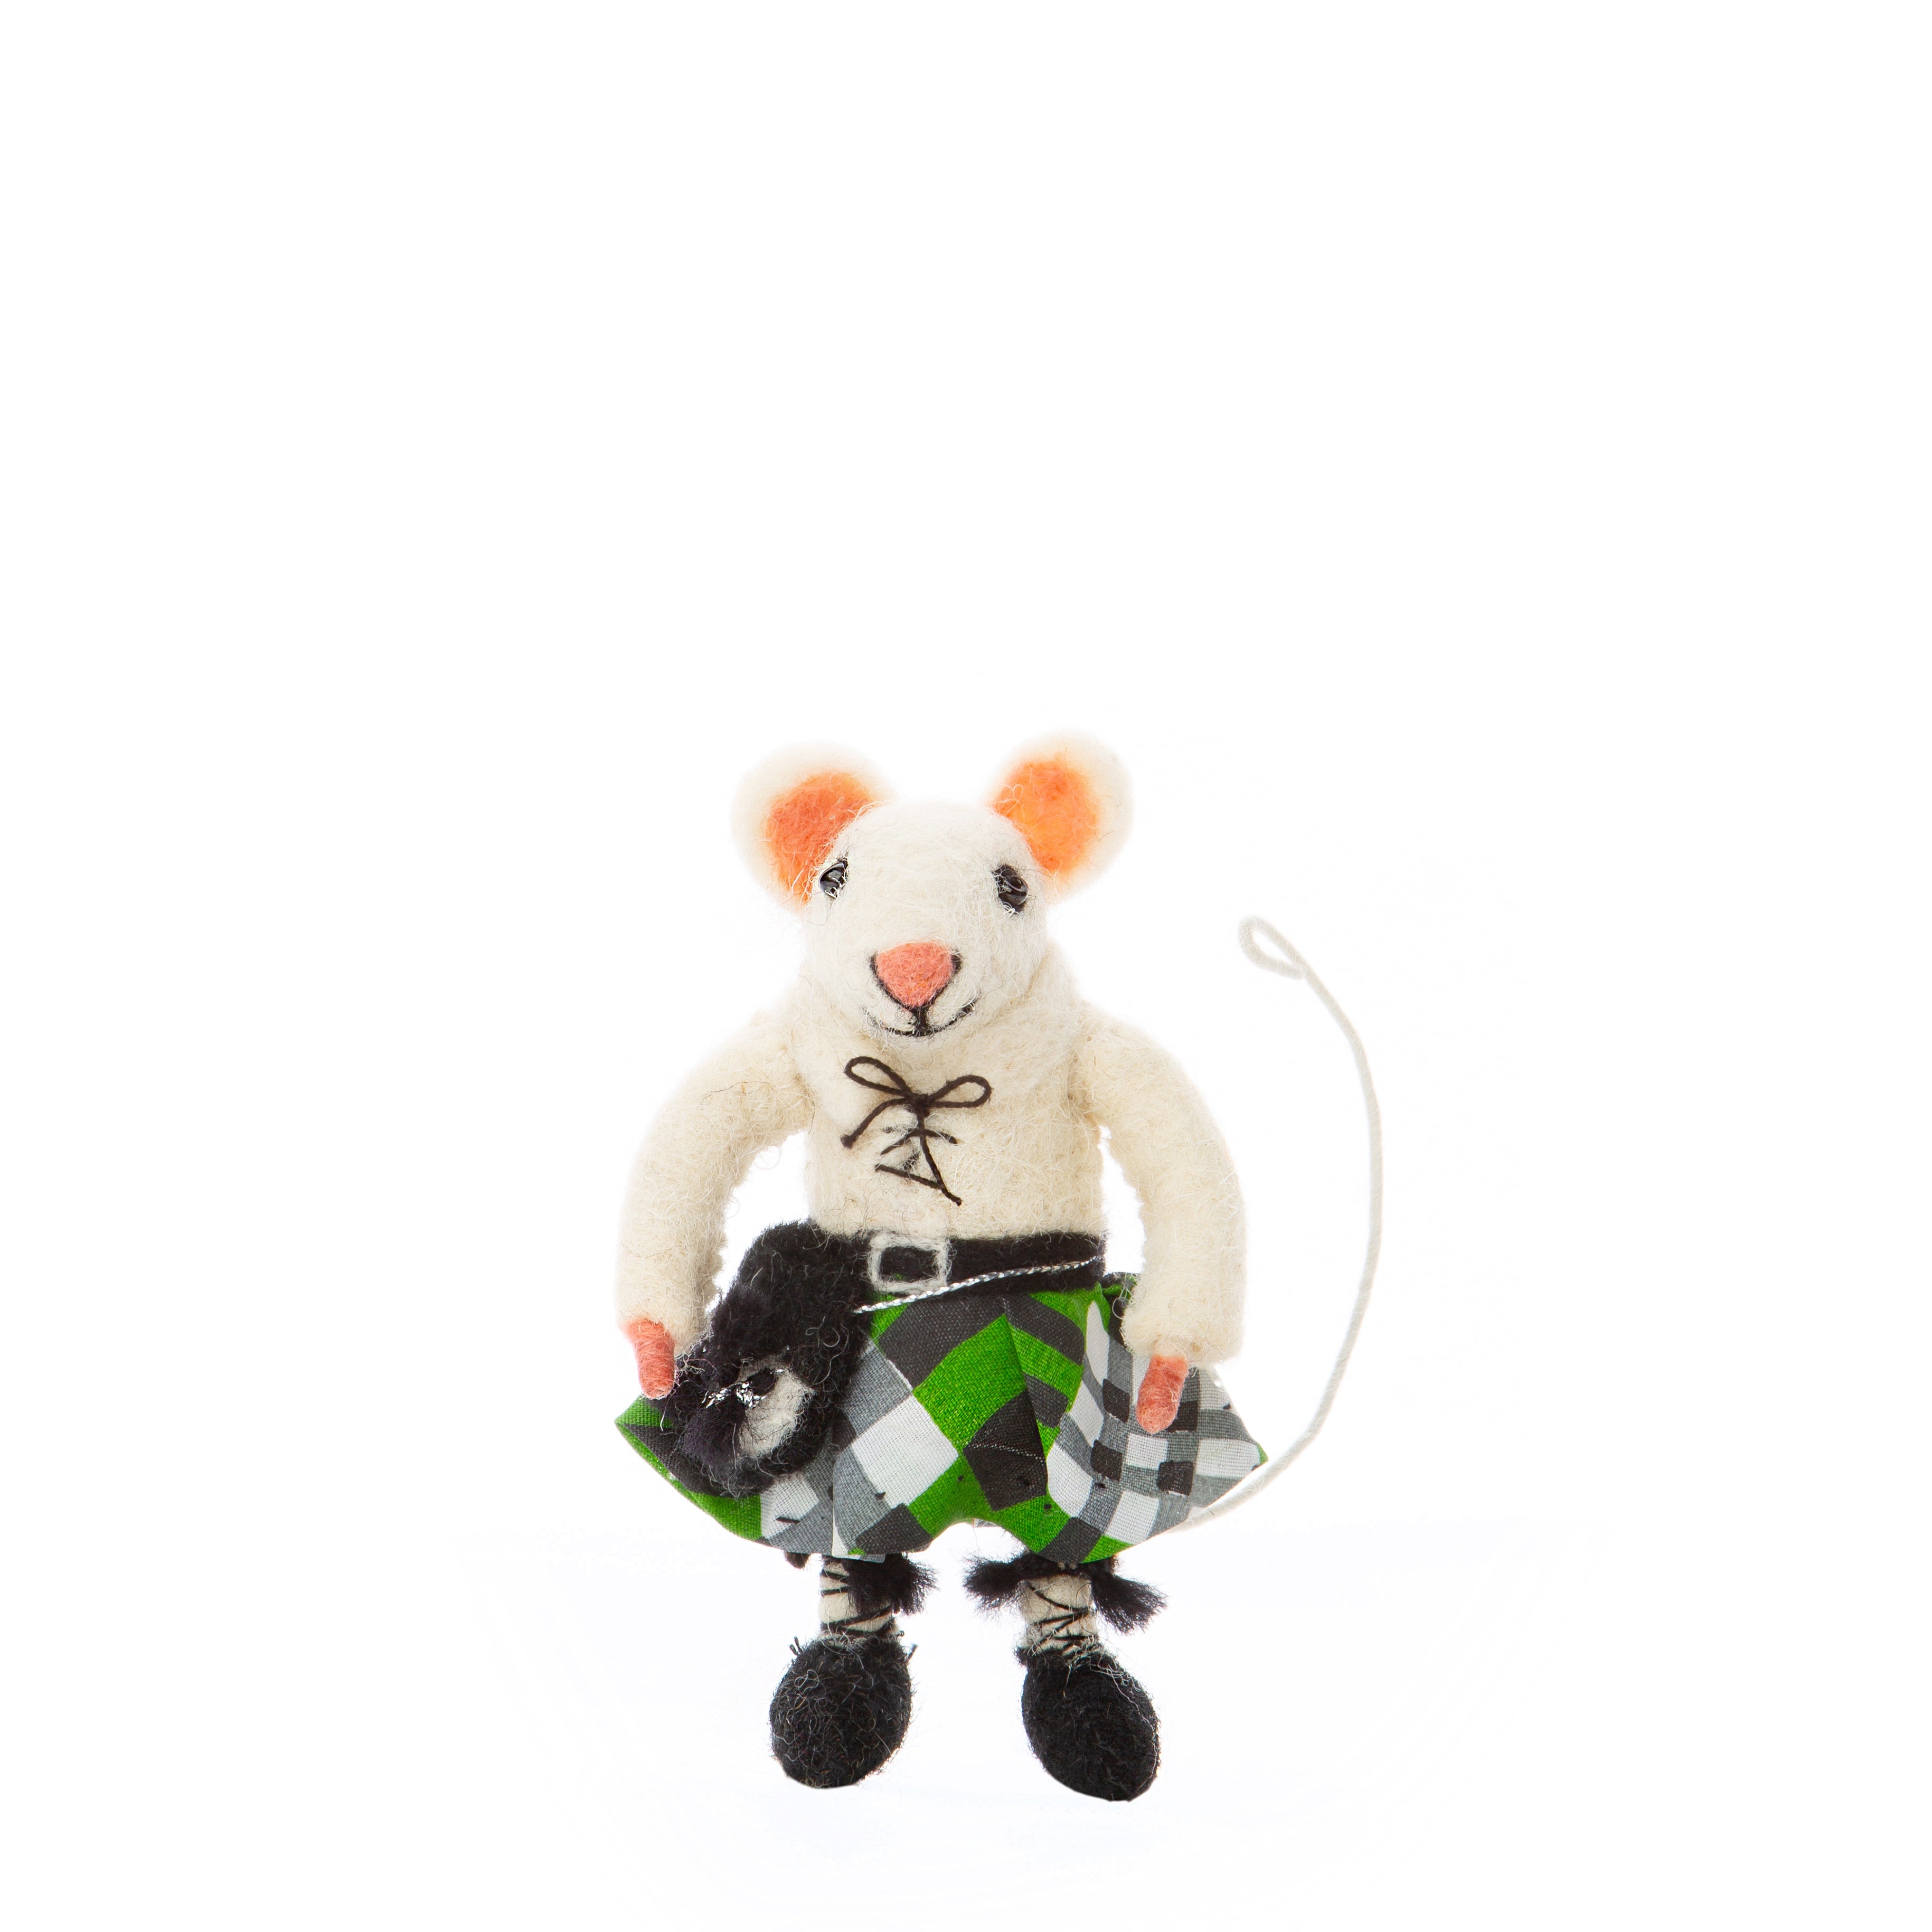 Scottish Mouse in Green Kilt